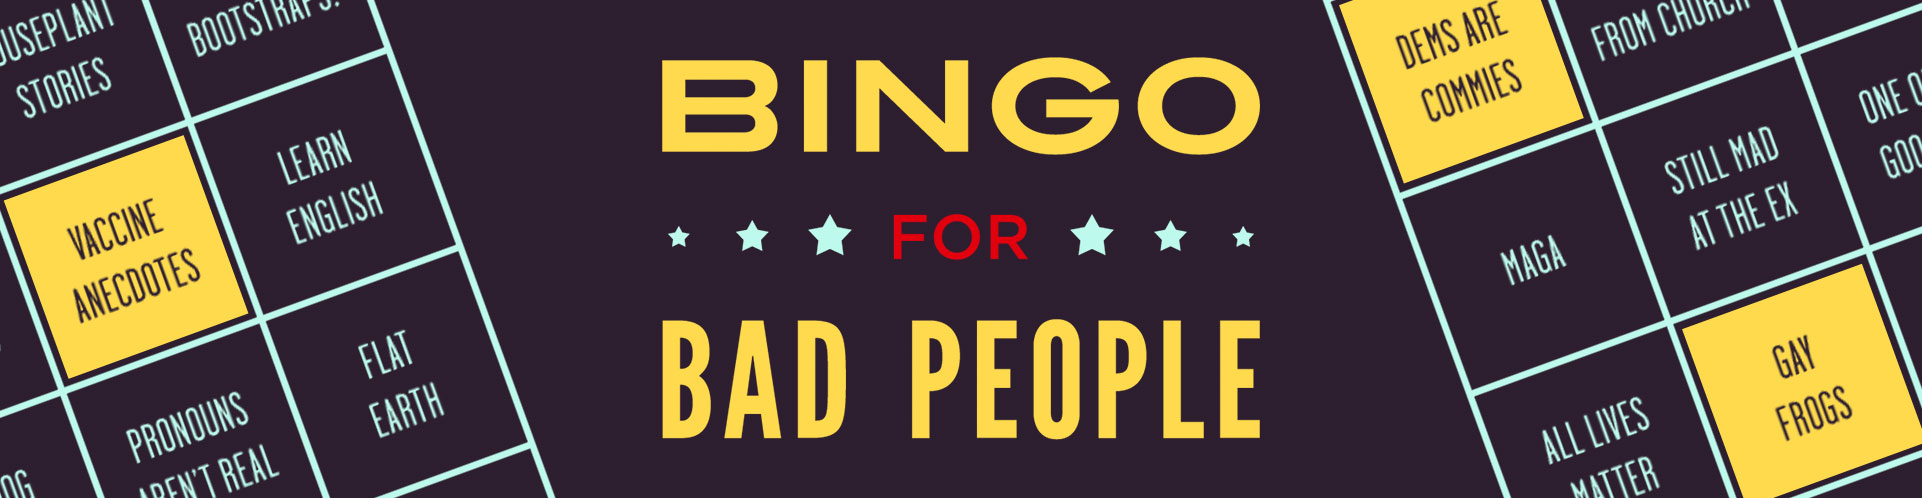 Bingo for Bad People